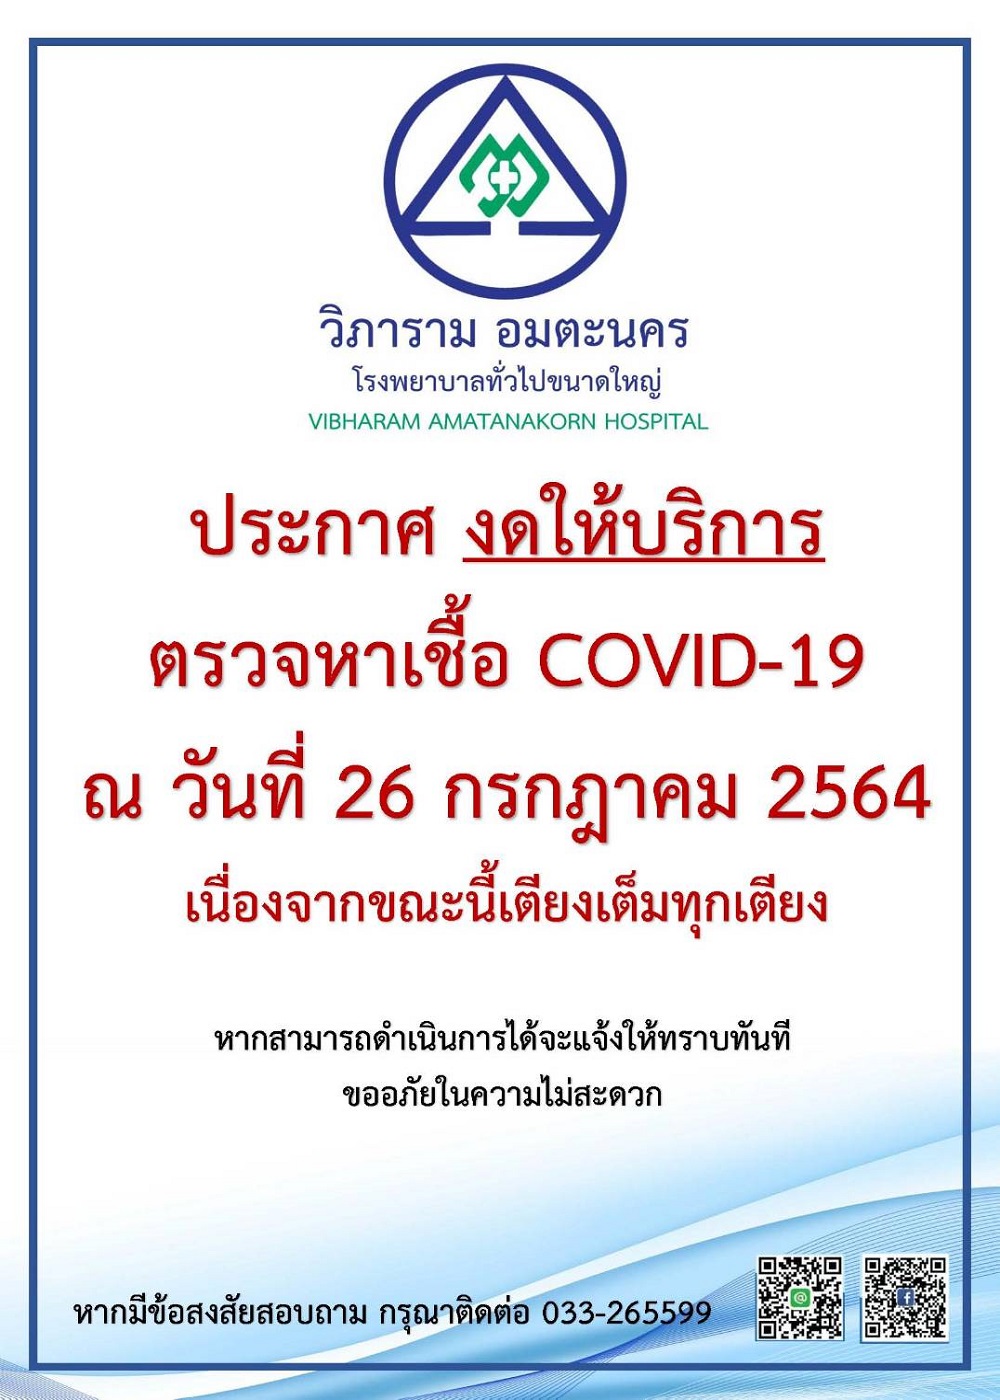 ประกาศ งดให้บริการตรวจหาเชื้อ COVID-19 ณ วันที่ 26 กรกฎาคม 2564